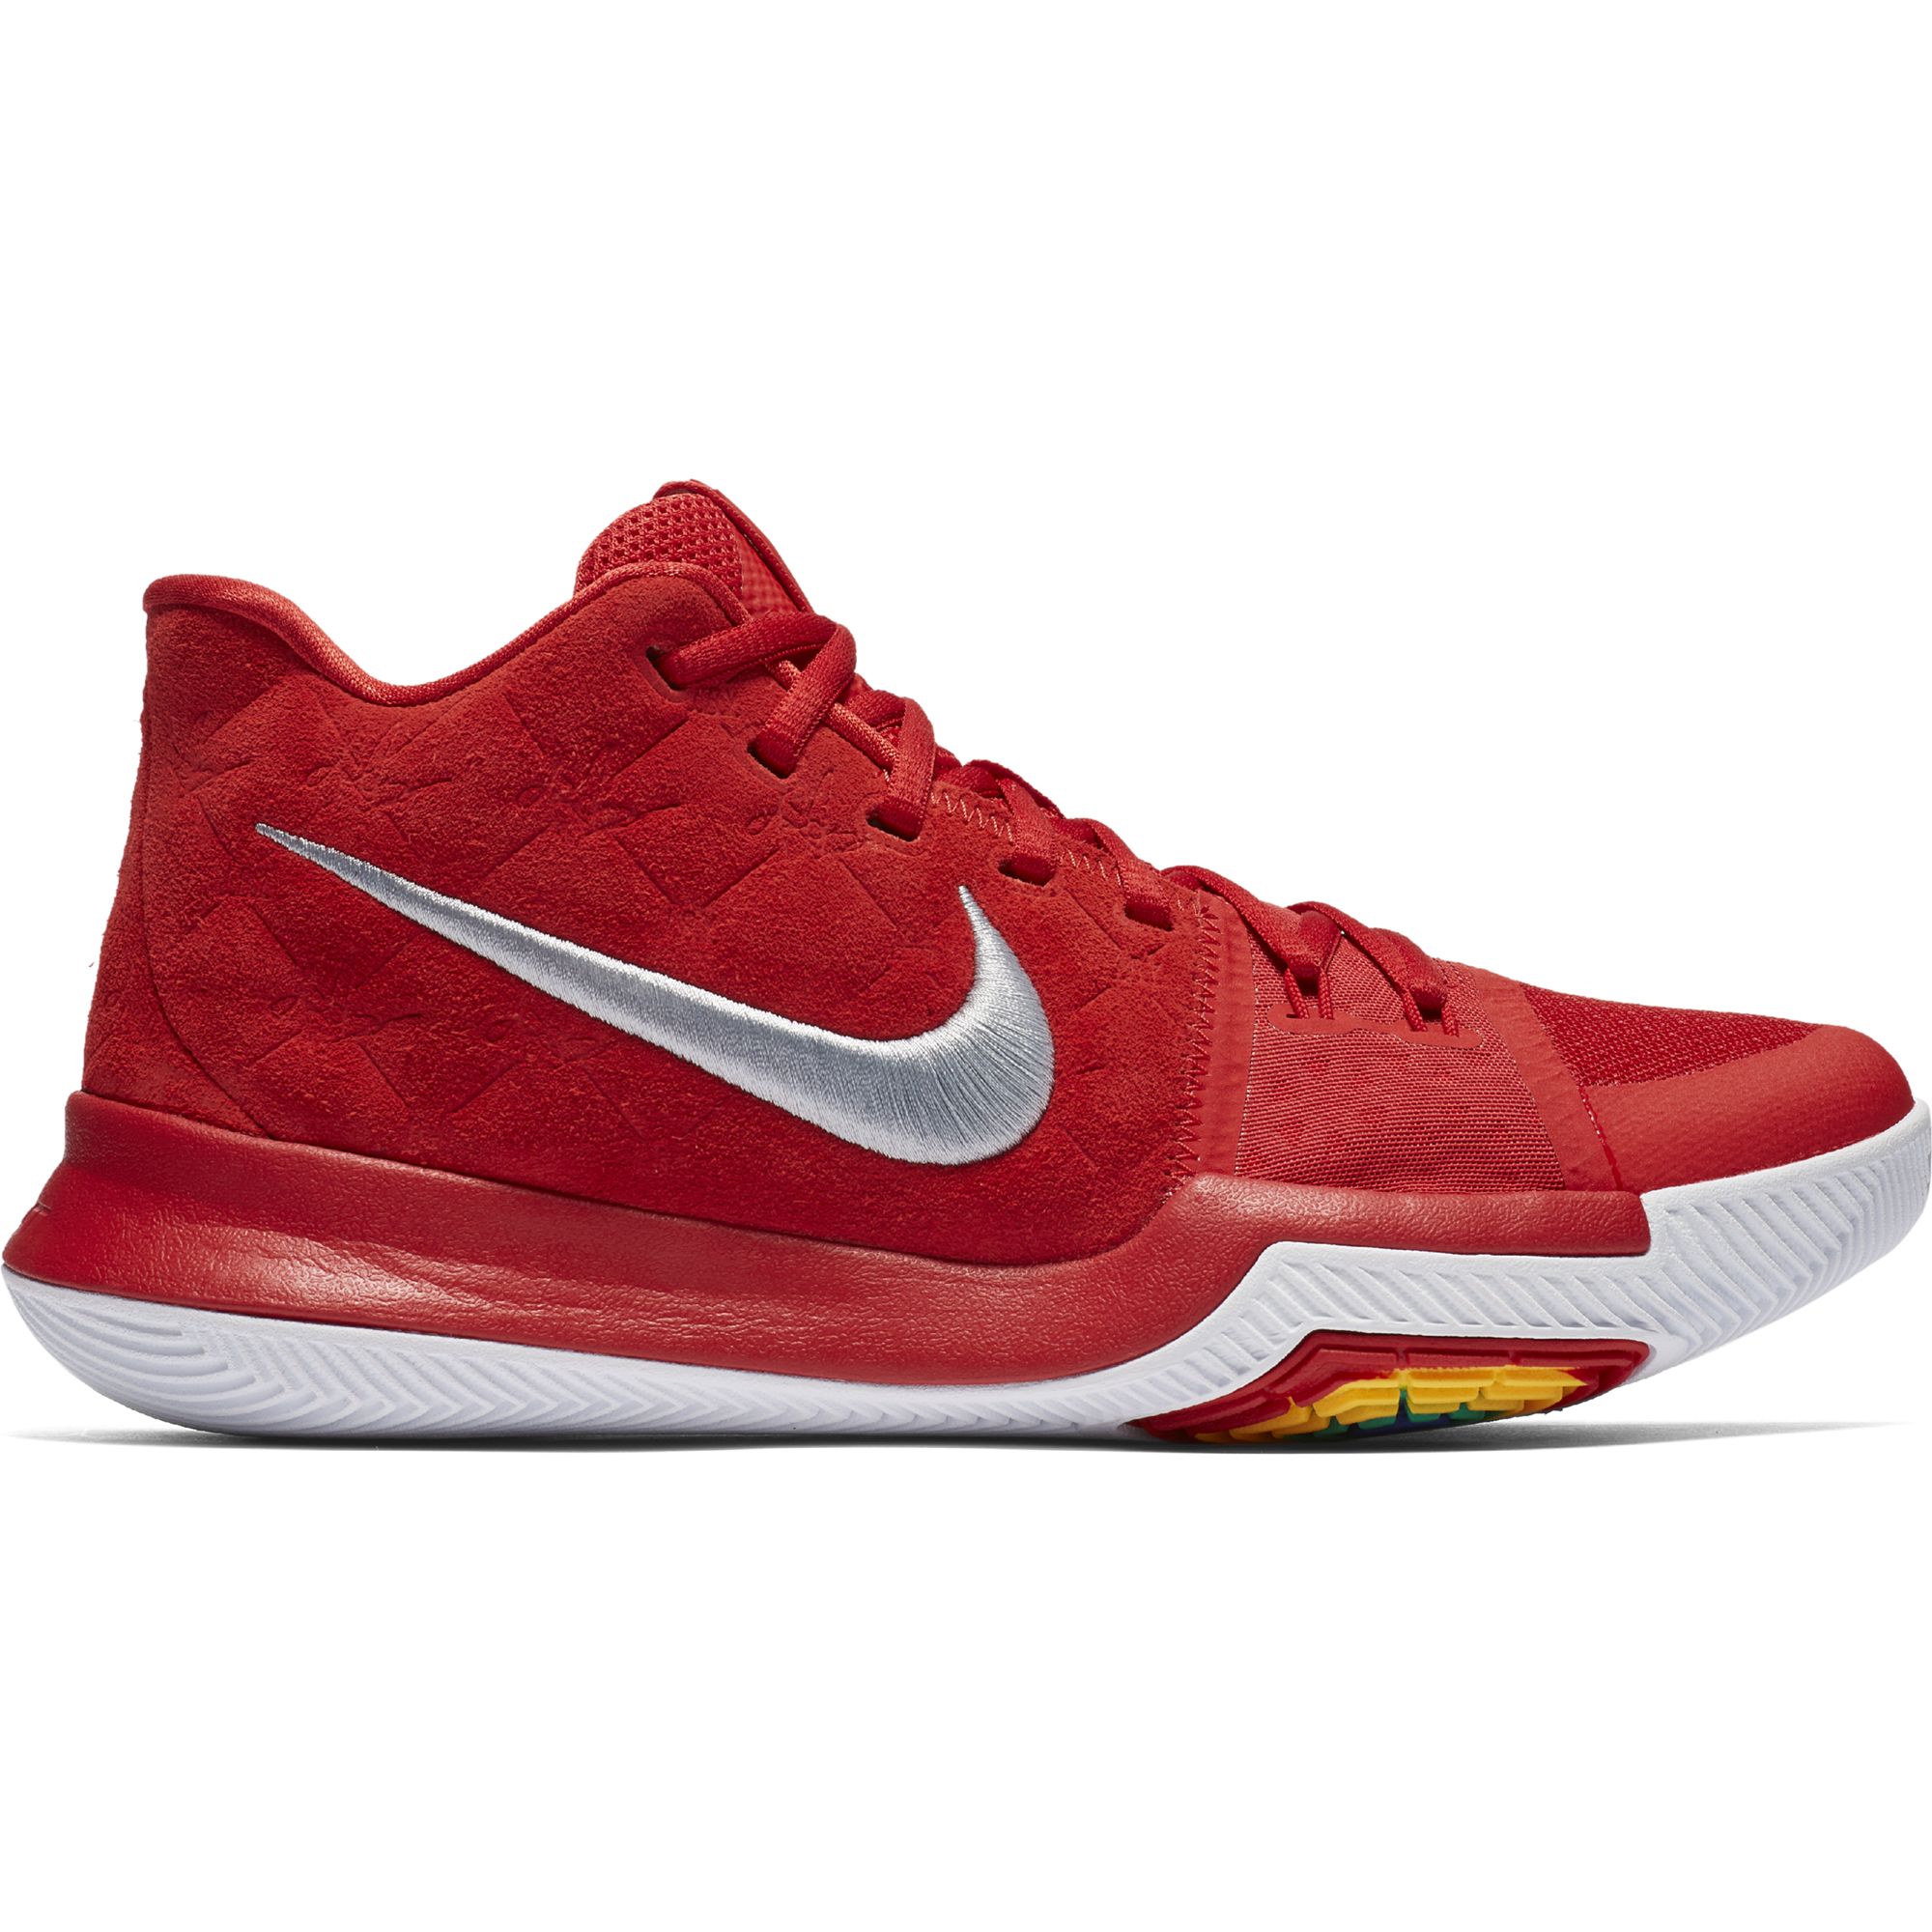 Баскетбольные кроссовки Nike Kyrie 3 "Red Suede" - картинка